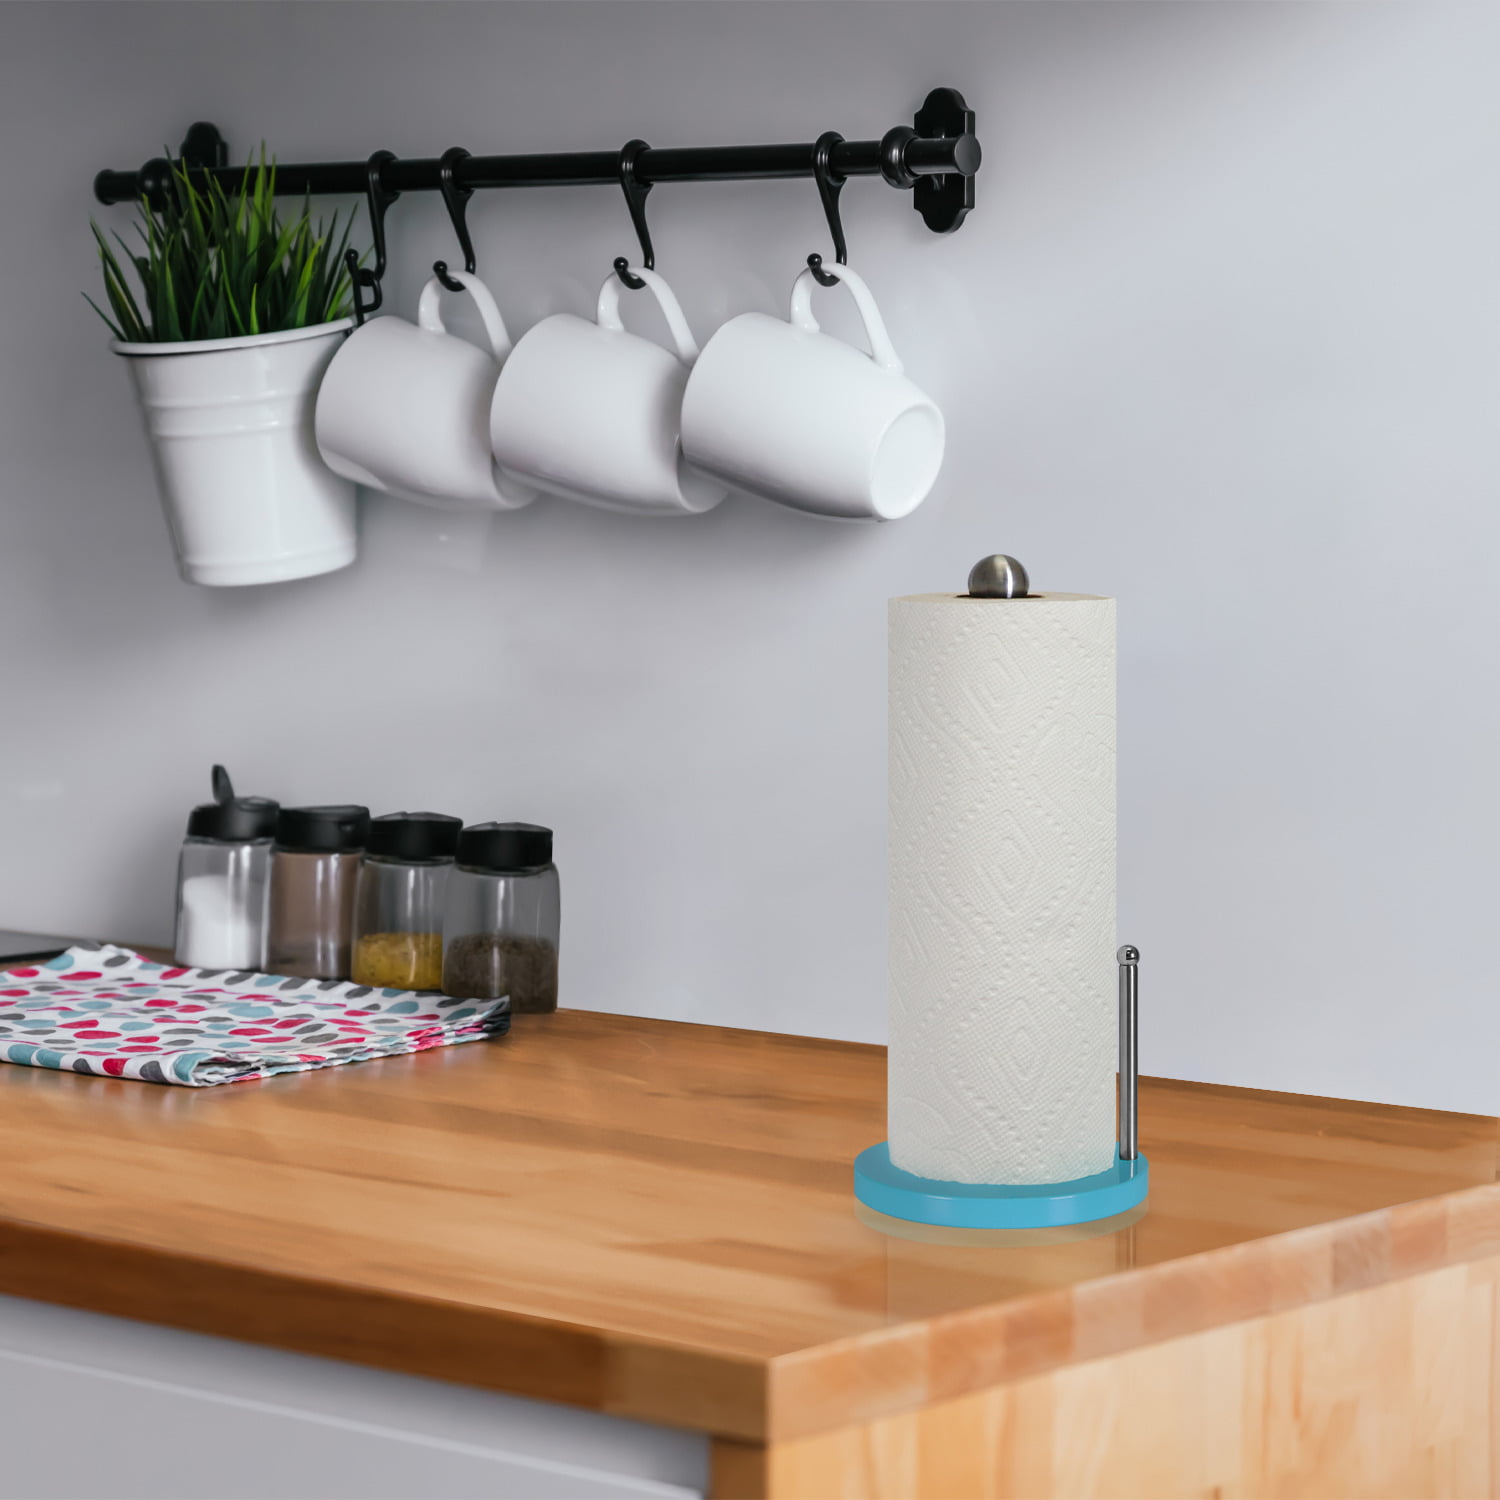 ACEHOOM Kitchen Countertop Freestanding Paper Towel Holder in